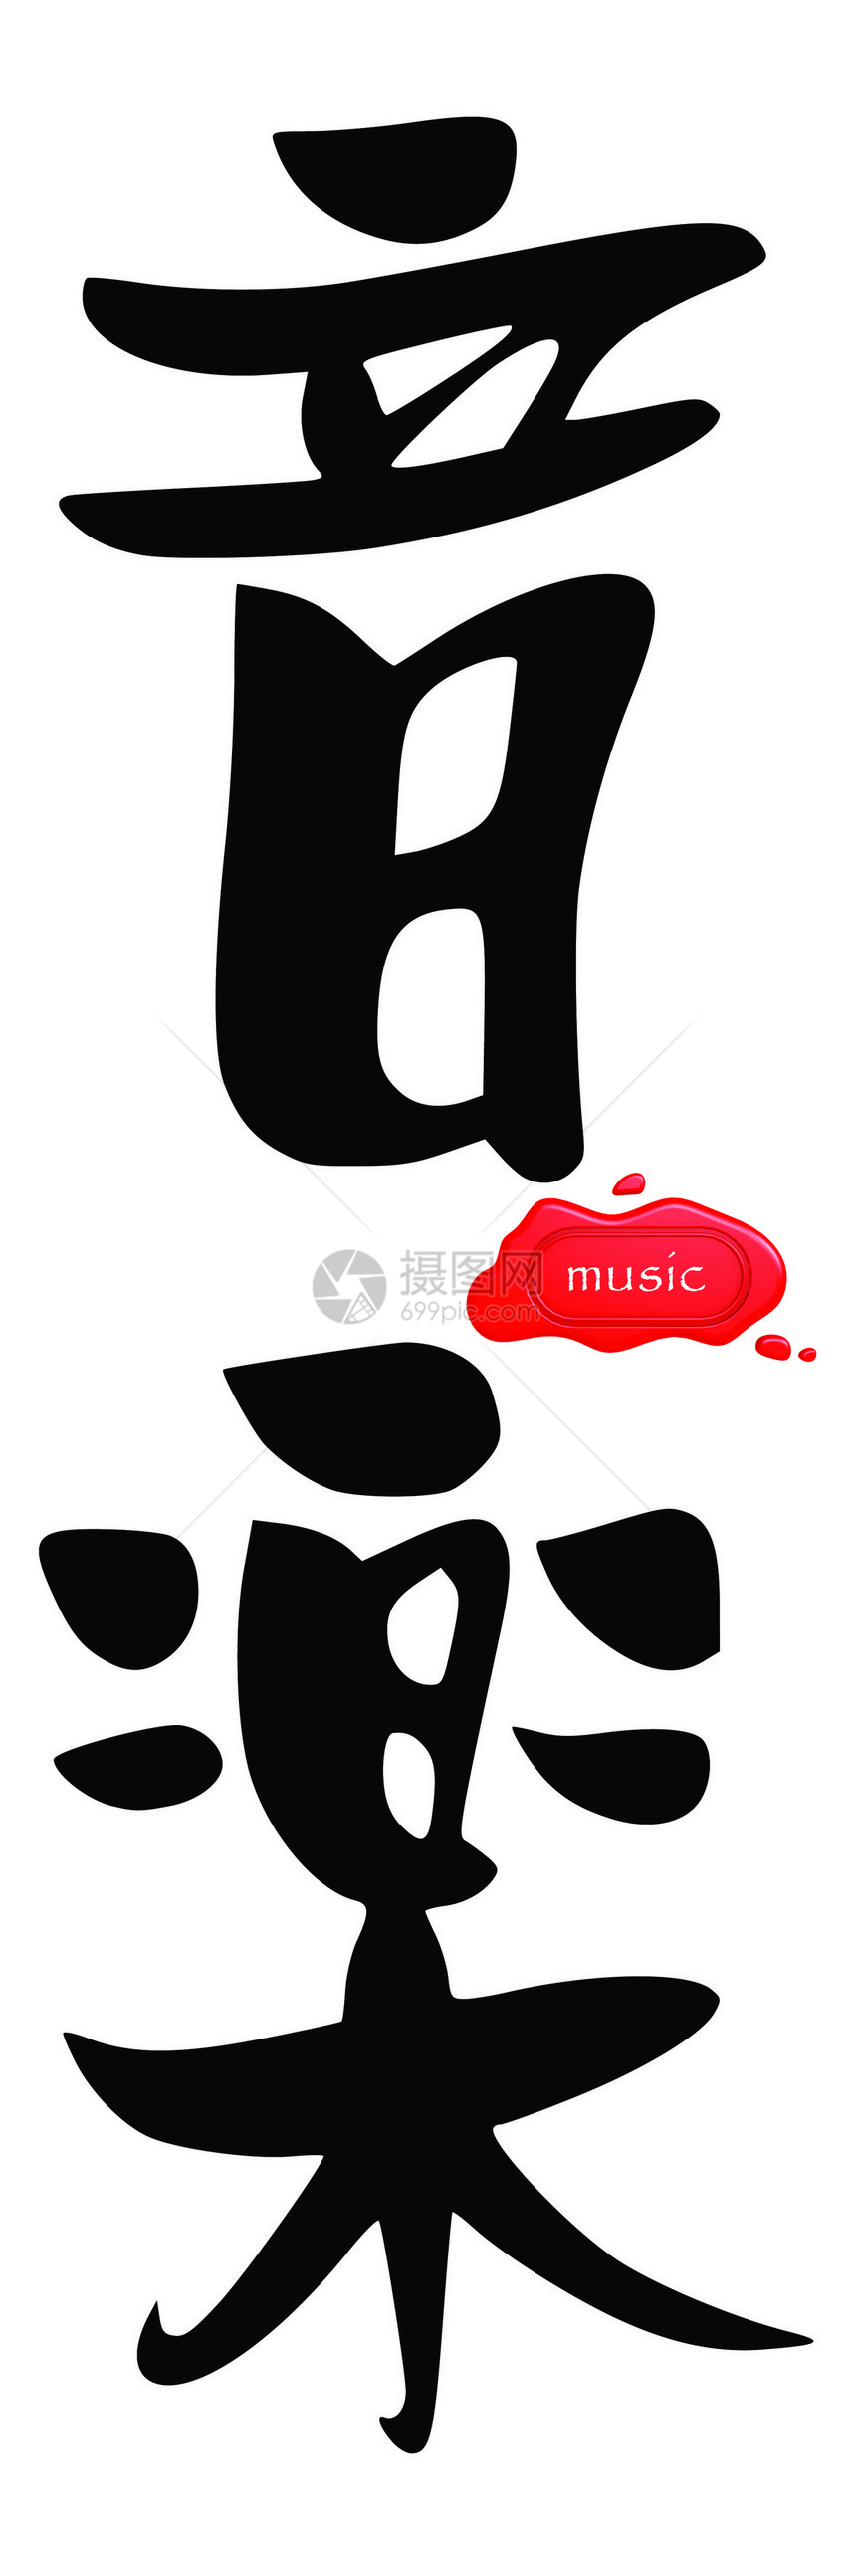 中文音乐图片